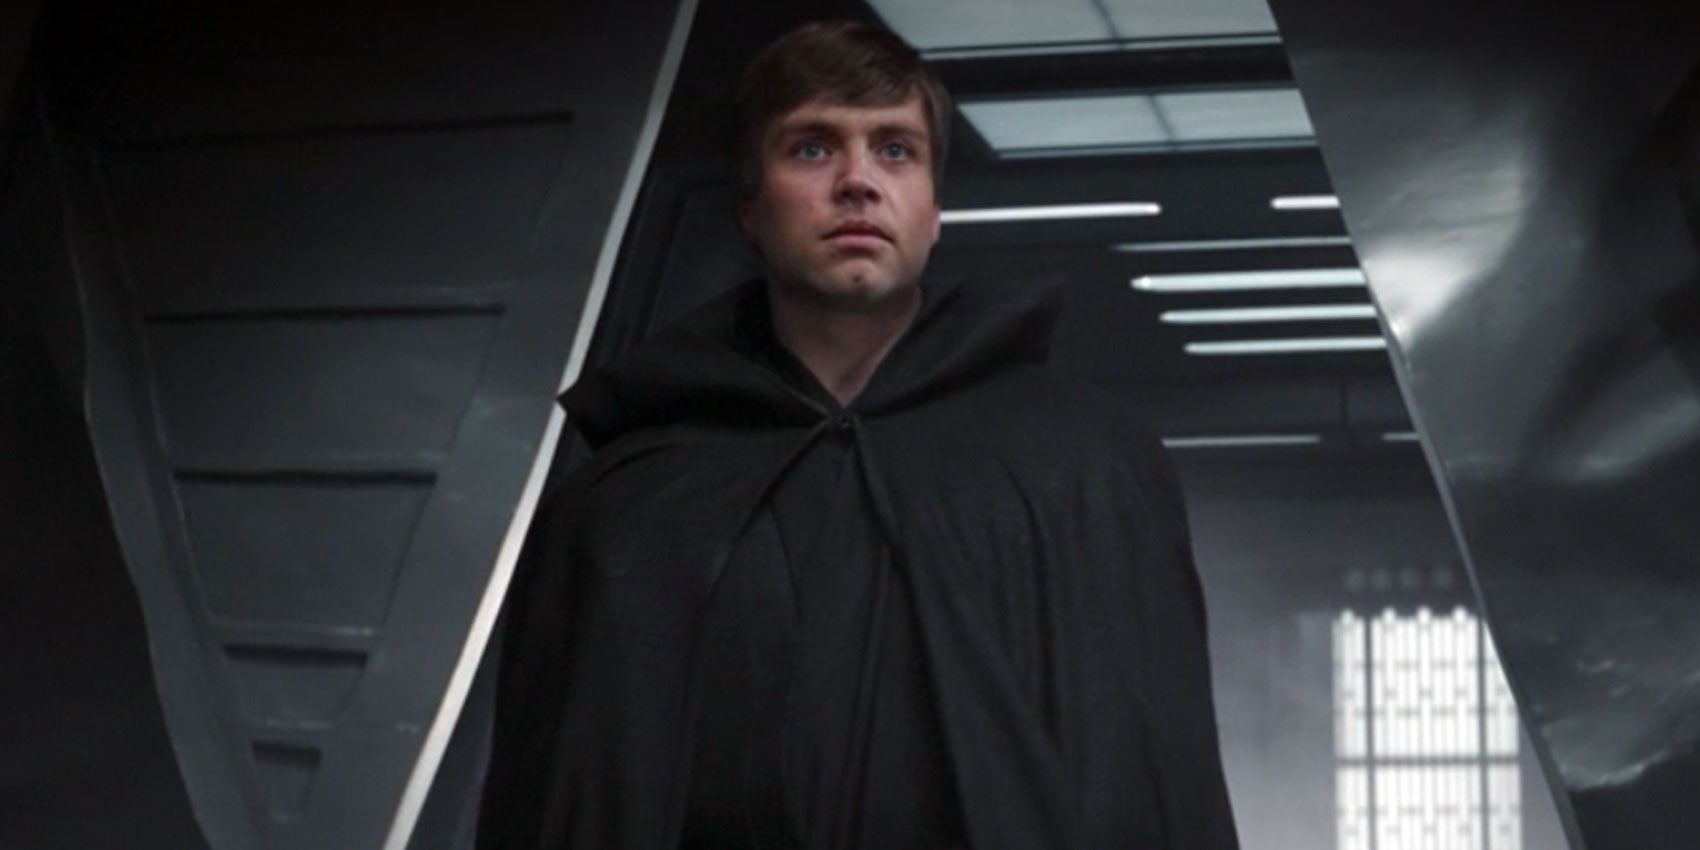 Luke Skywalker stands aboard Moff Gideon's light cruiser